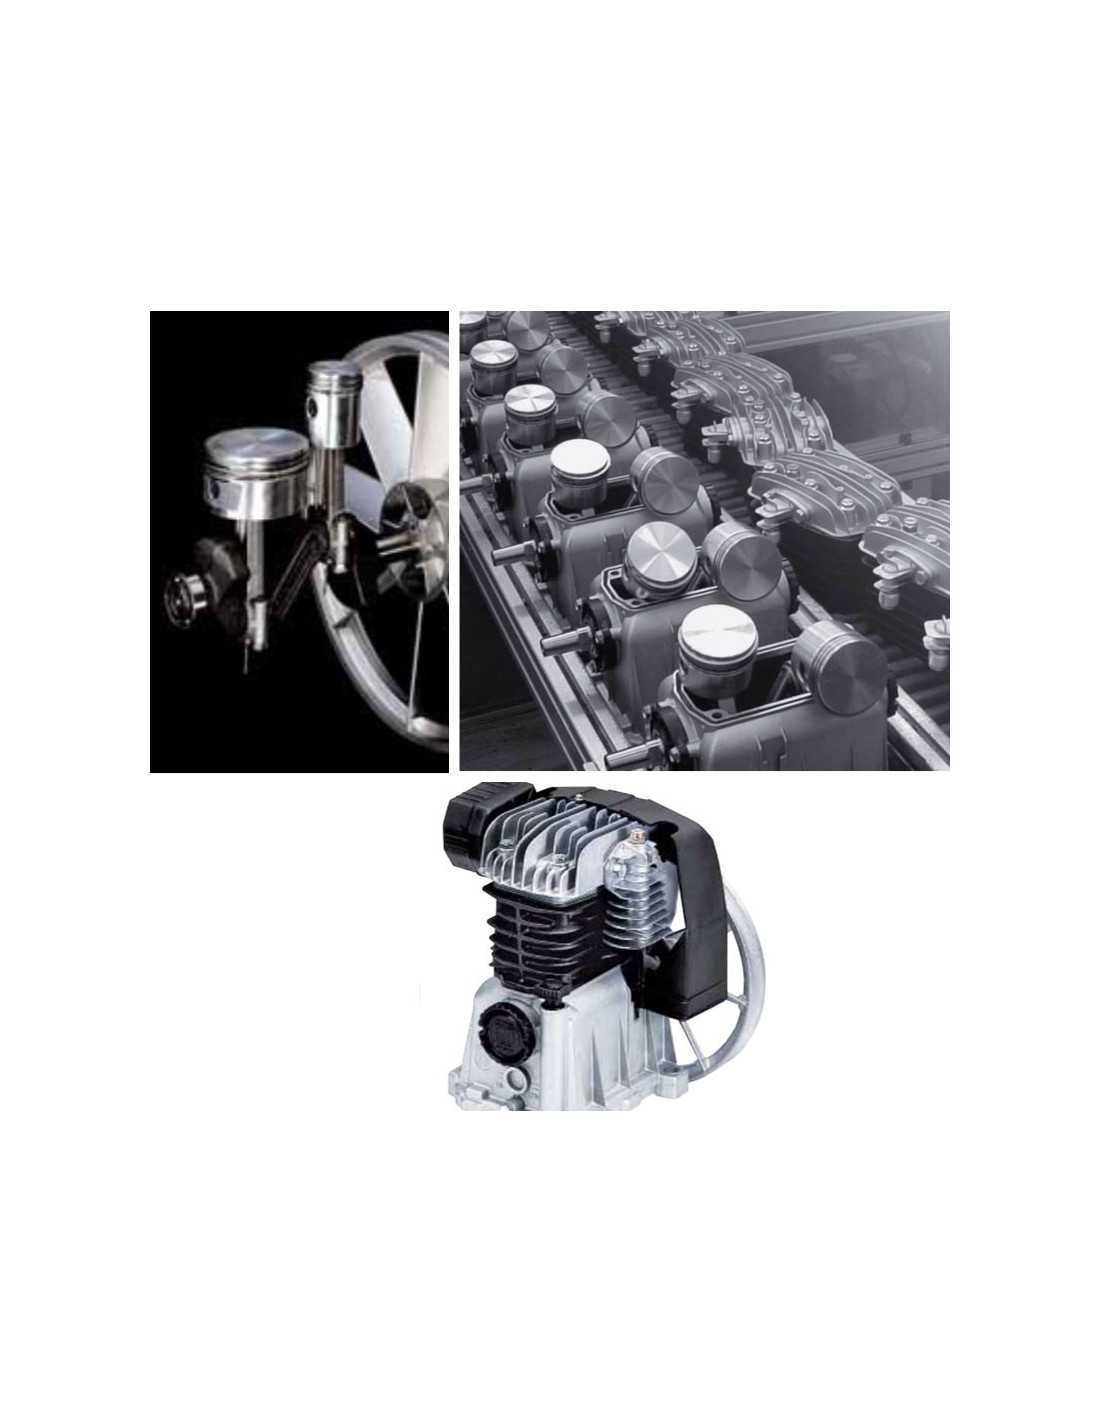 Compresor Aire 3-hp 100lts 220v C/correa Fermetal Com-05 – Hierros